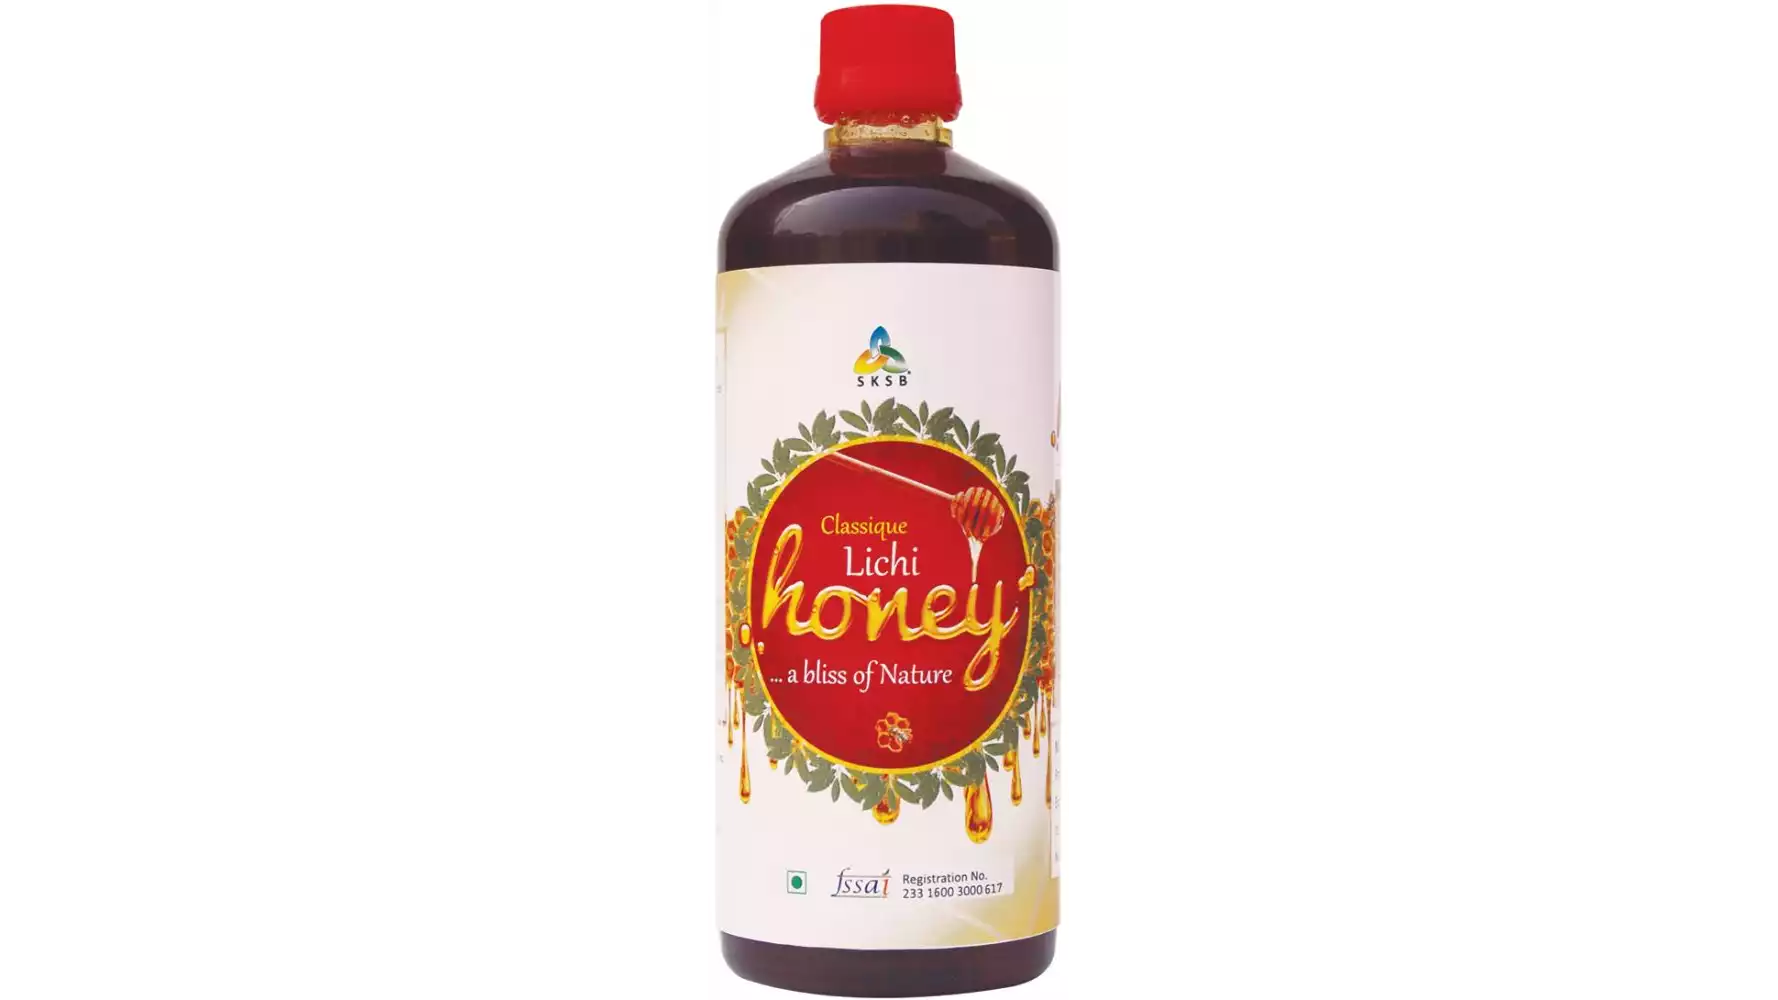 SKSB Natural Honey Lichi (750g)